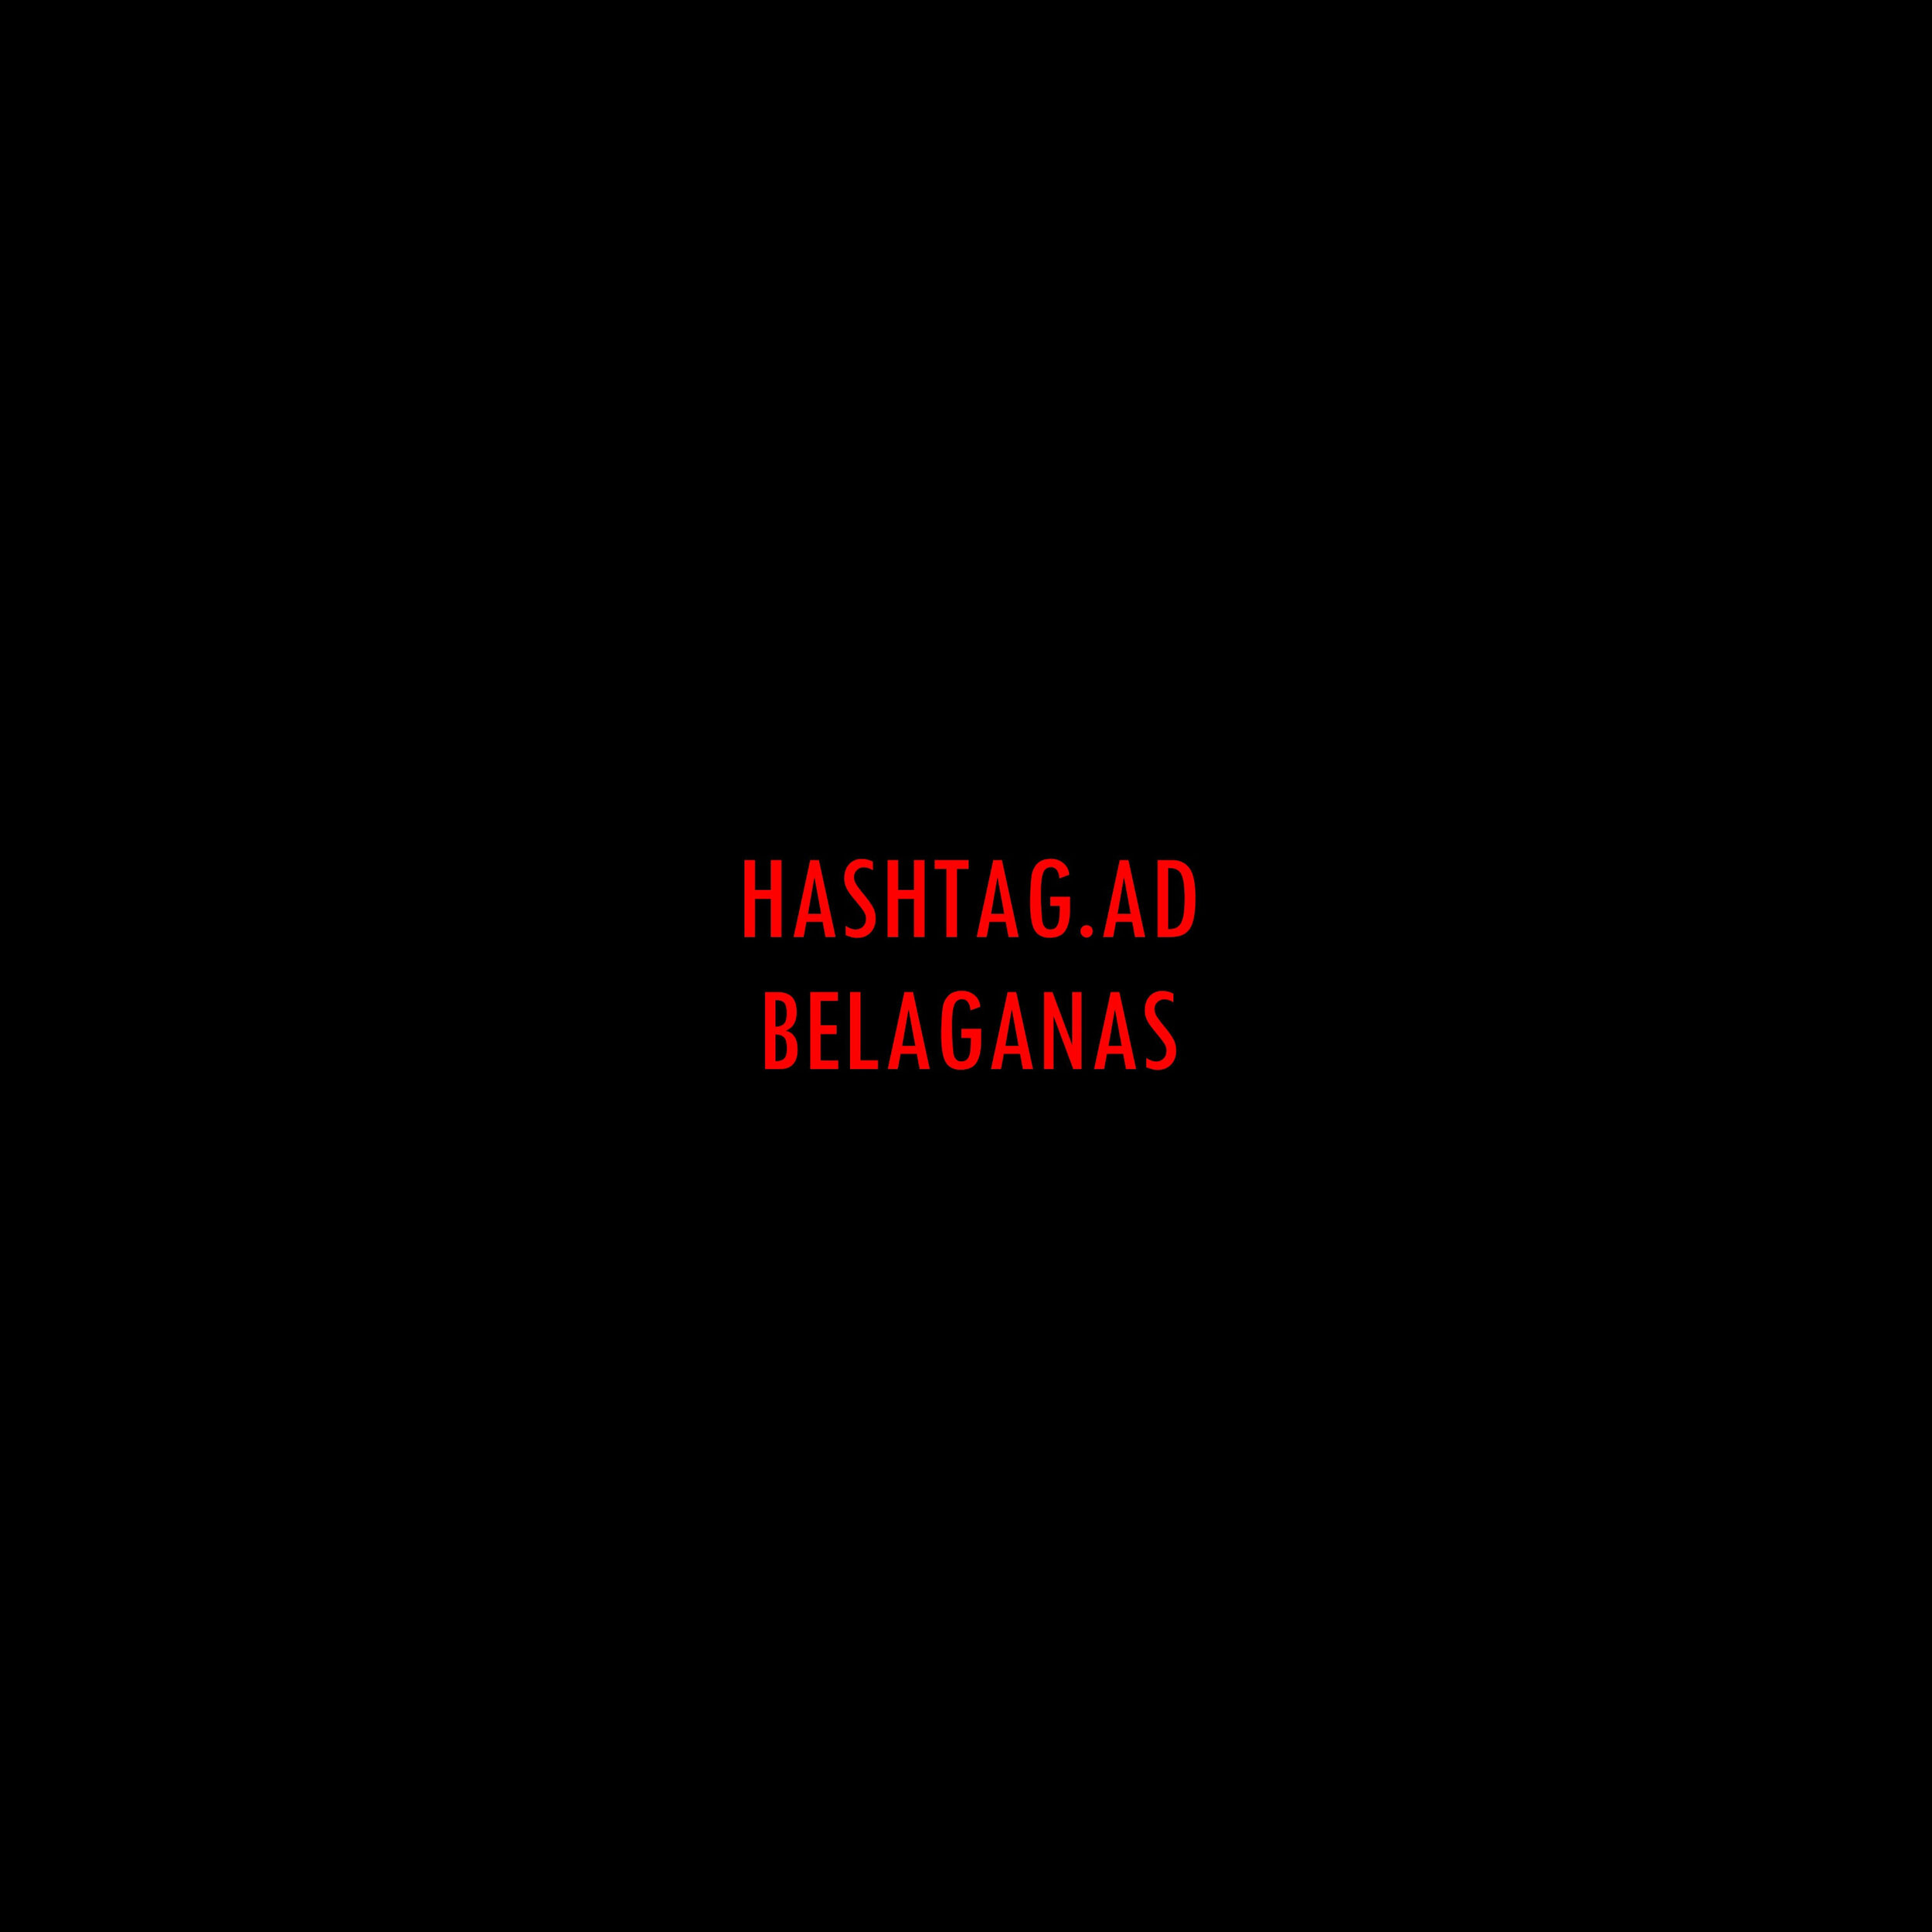 Hashtag.ad_Cover_3000x3000.jpg